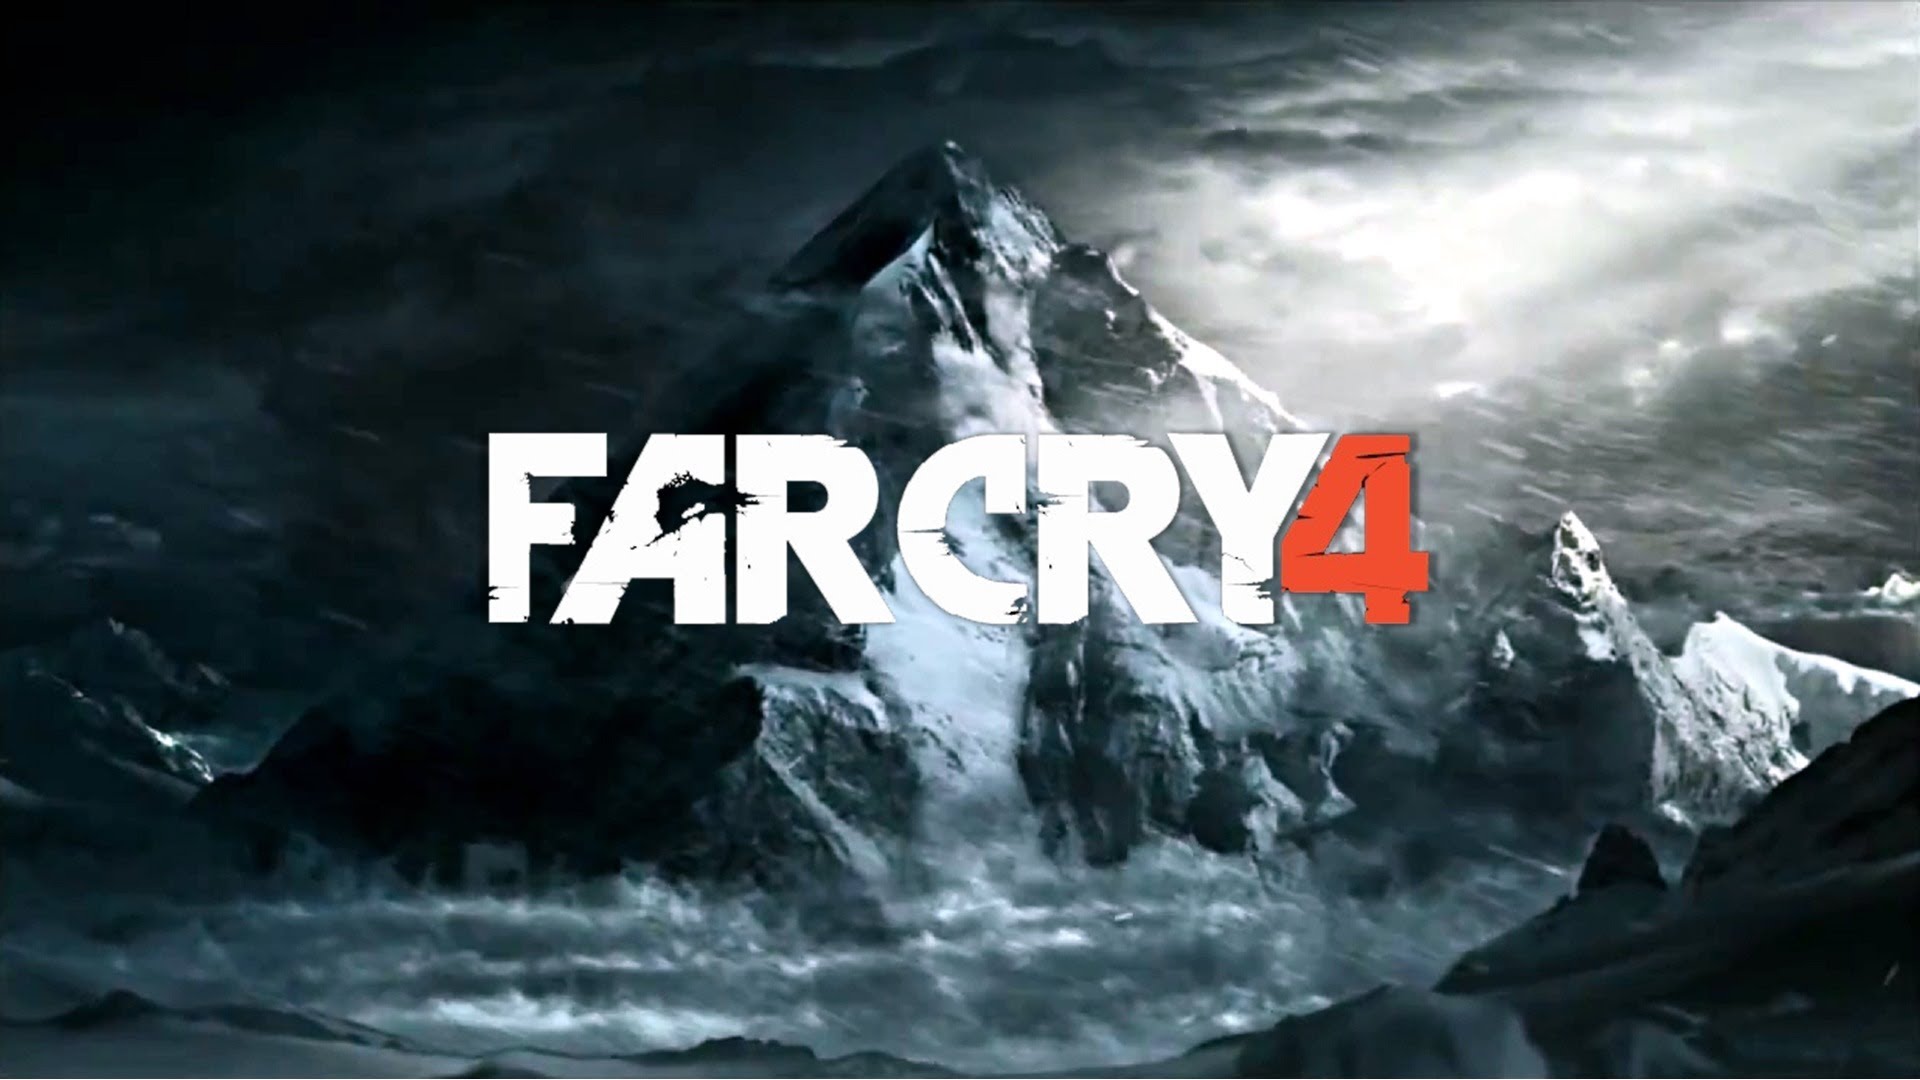 Farycry 4 PC Cdkey auf Tiefstand!